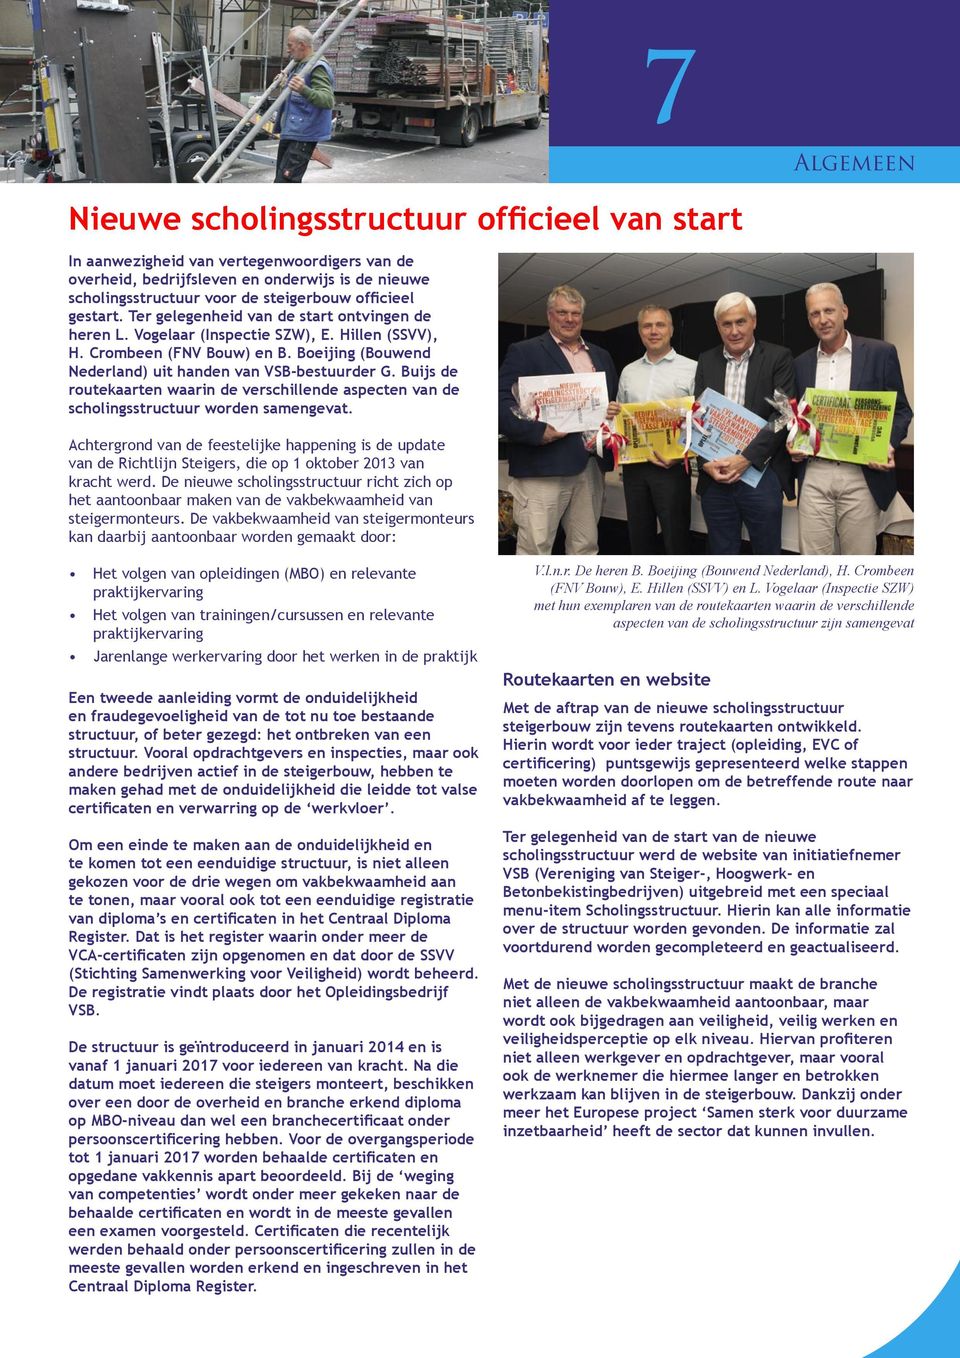 Boeijing (Bouwend Nederland) uit handen van VSB-bestuurder G. Buijs de routekaarten waarin de verschillende aspecten van de scholingsstructuur worden samengevat.